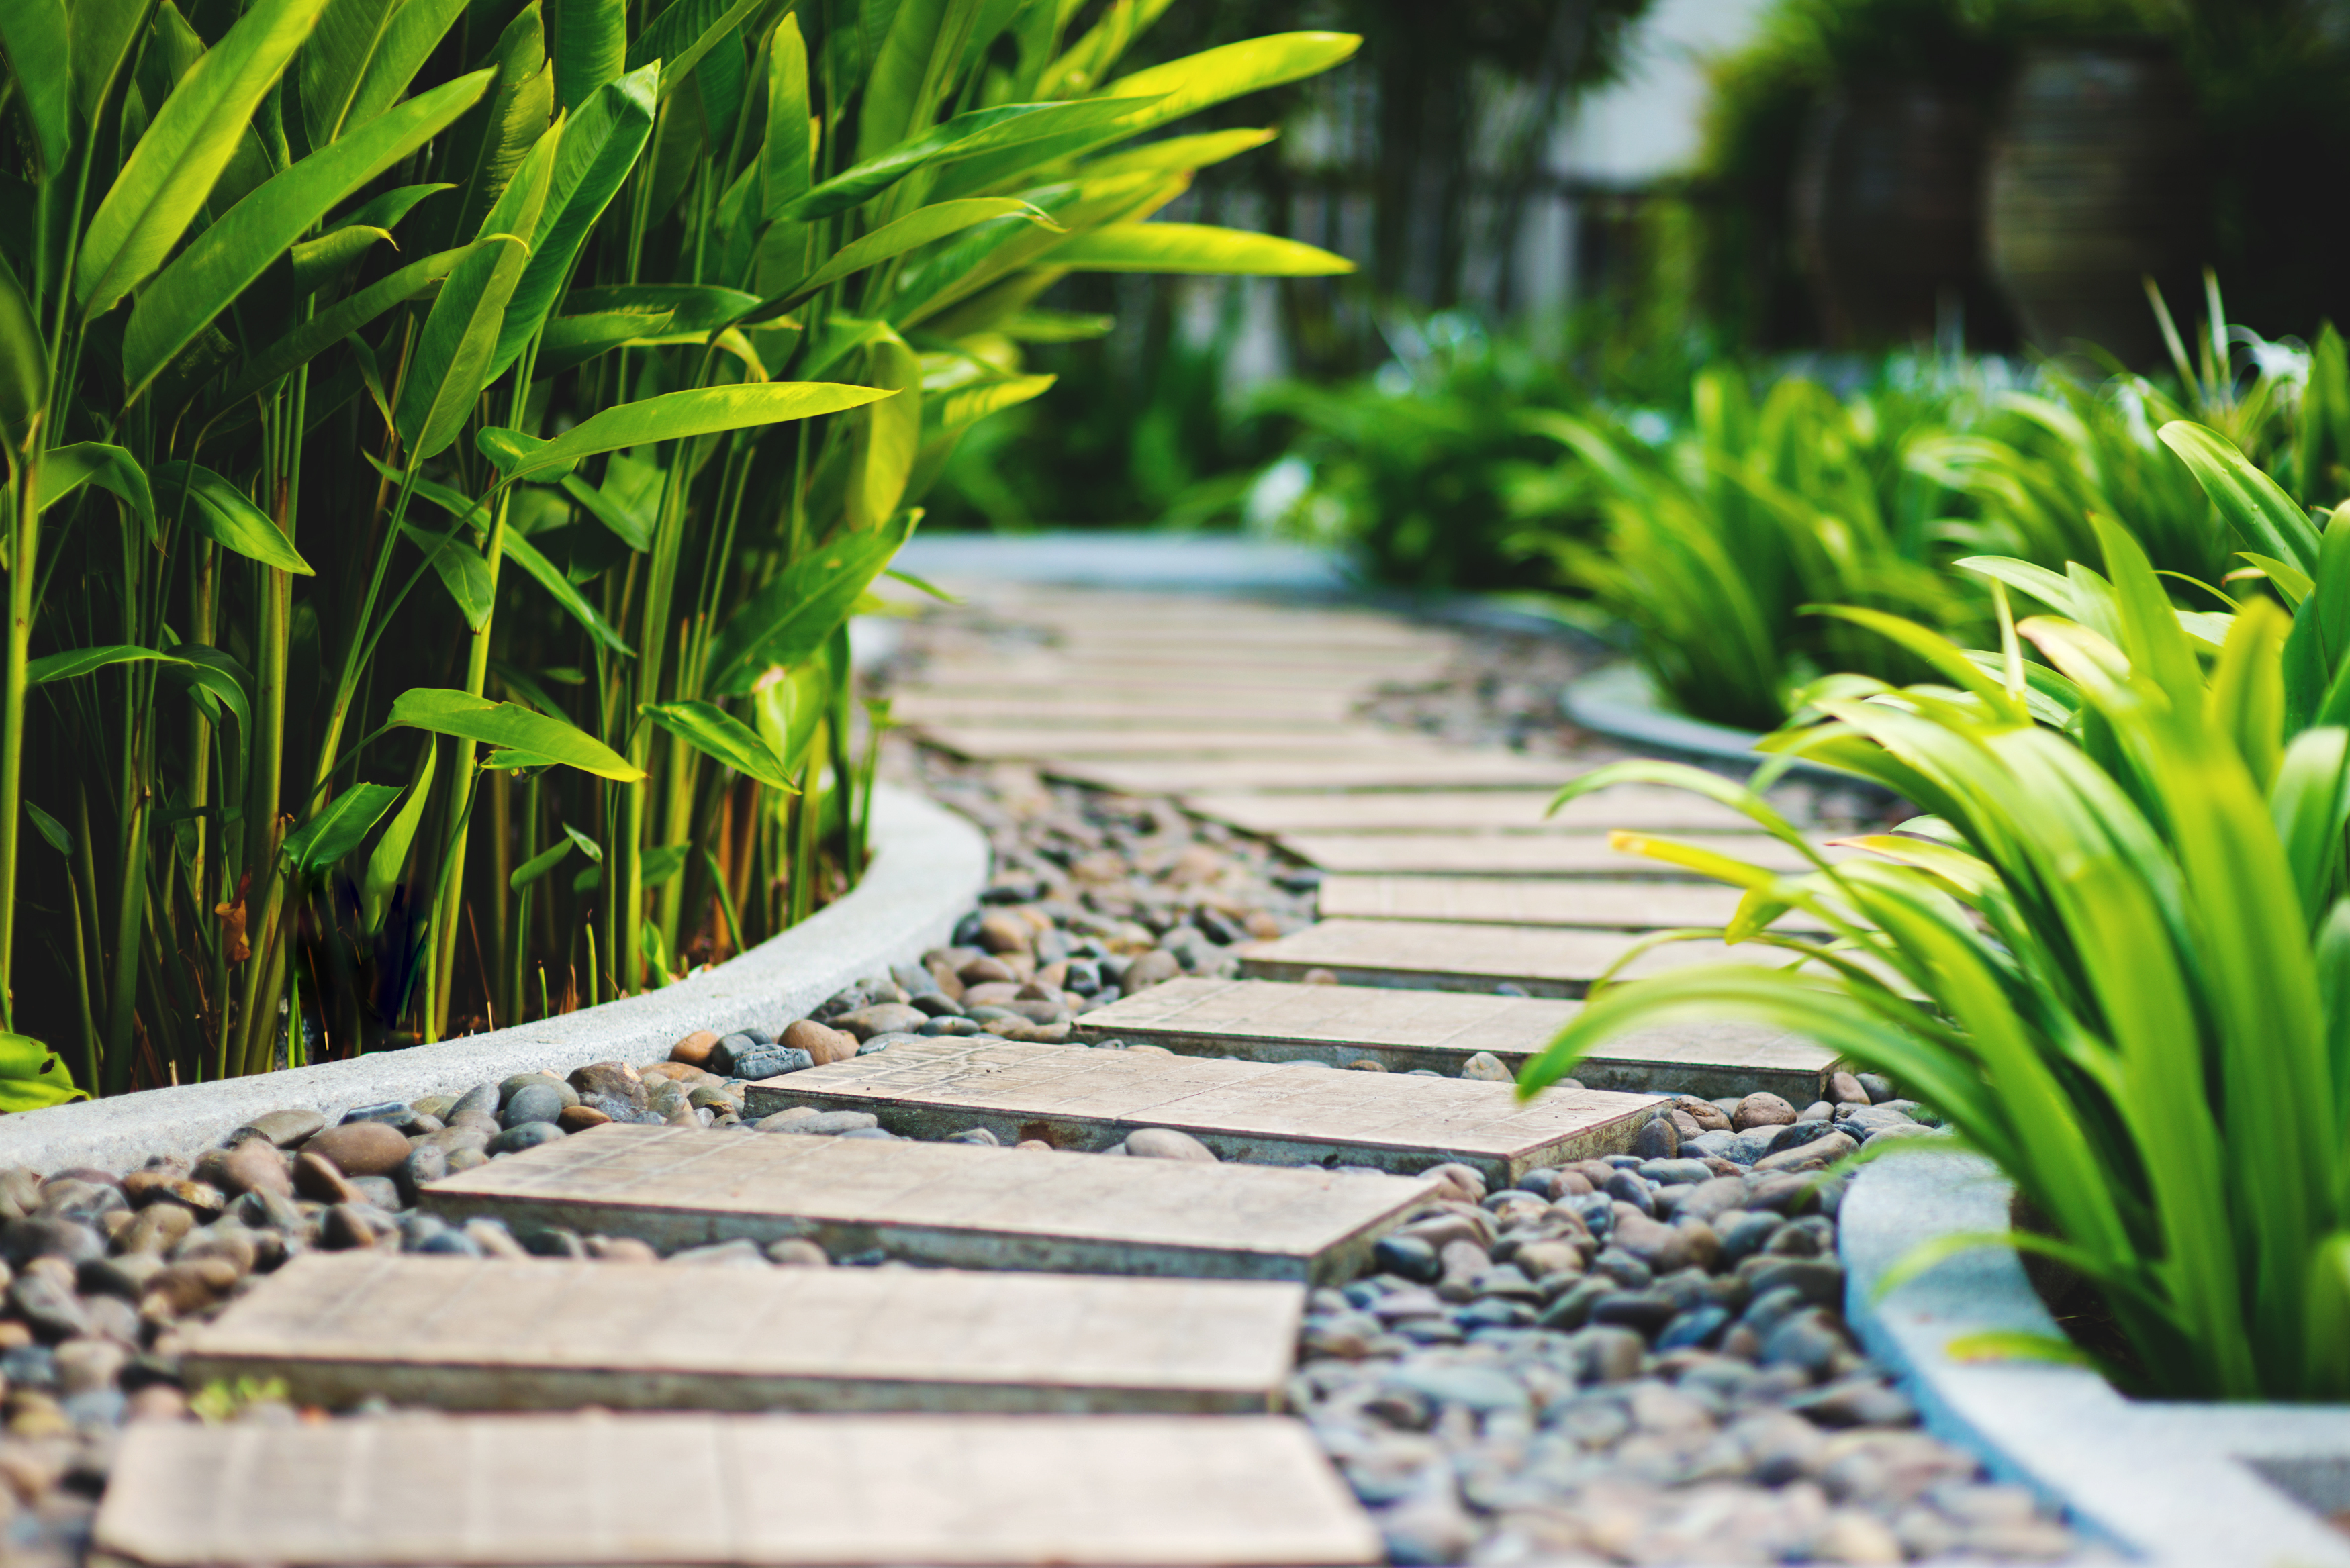 Aménagement jardin zen : créer un coin de paradis asiatique